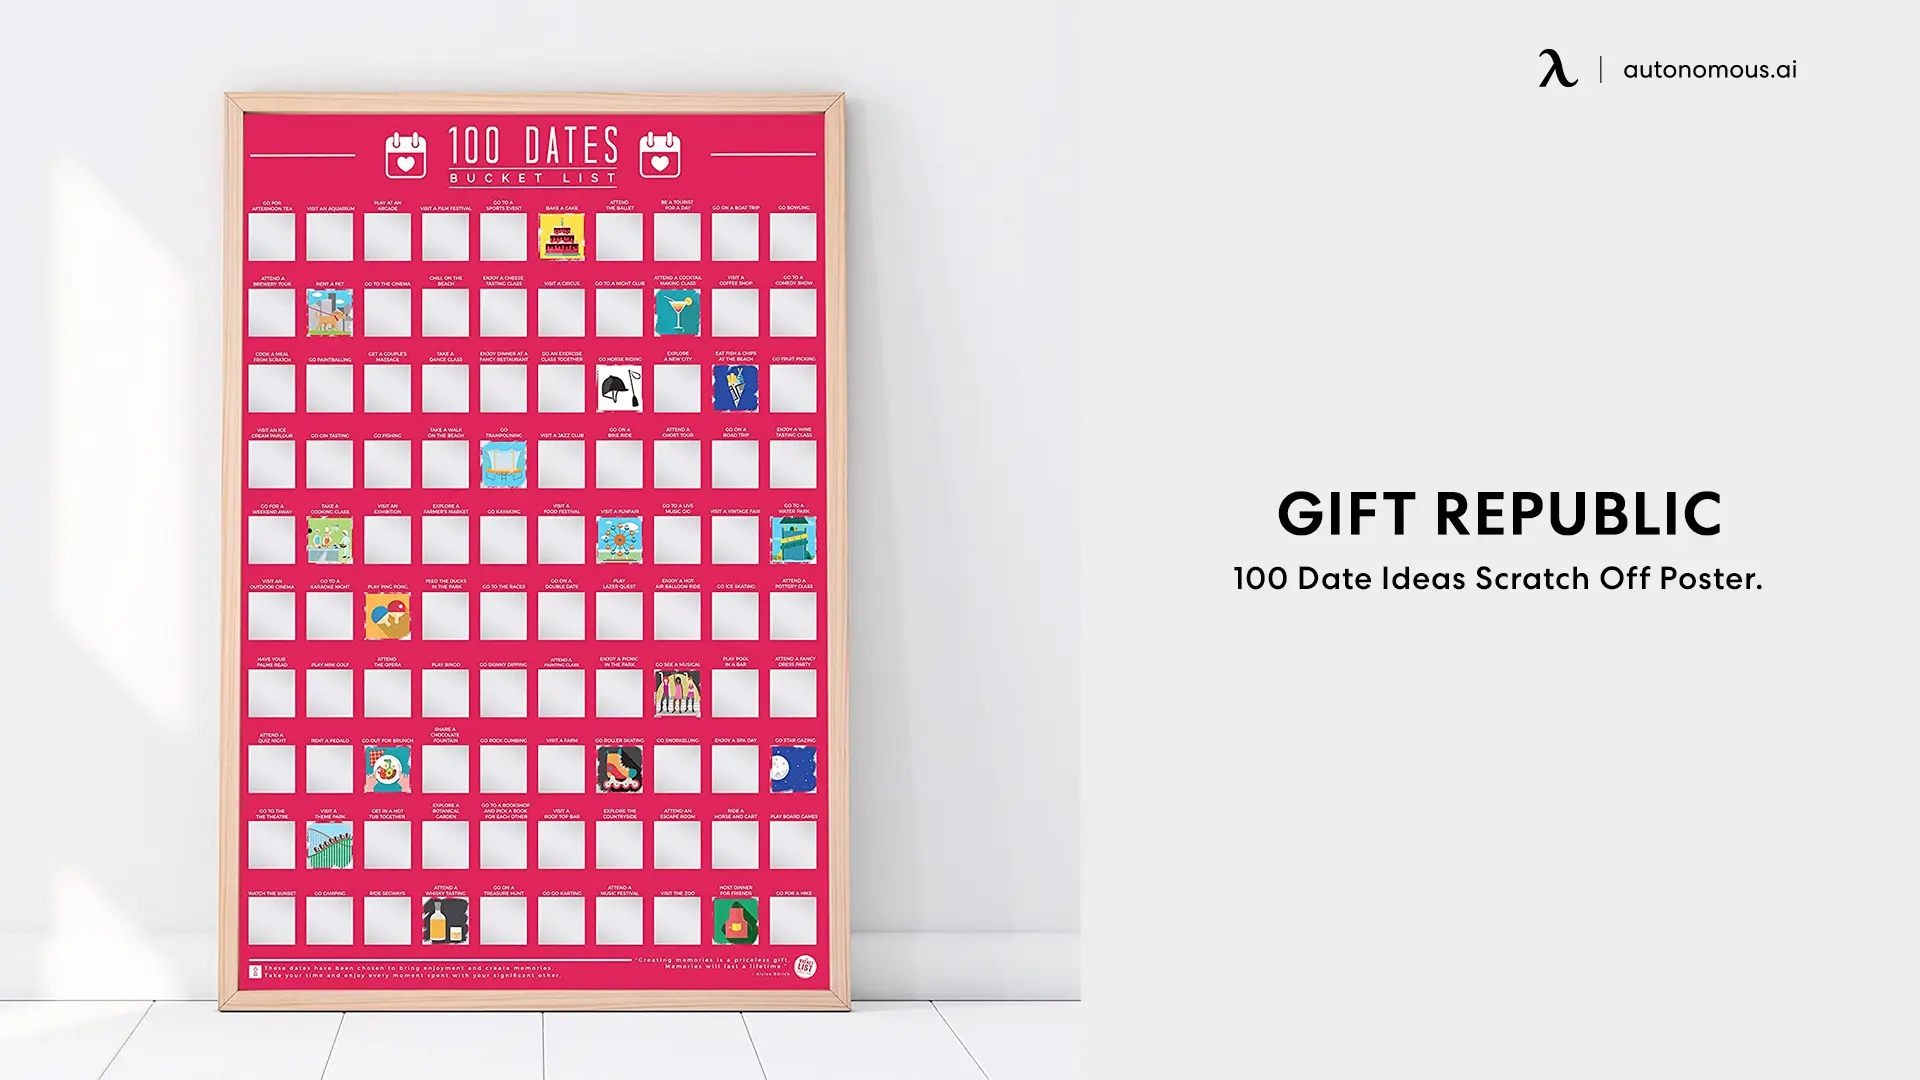 Gift Republic 100 Date Ideas Scratch Off Poster